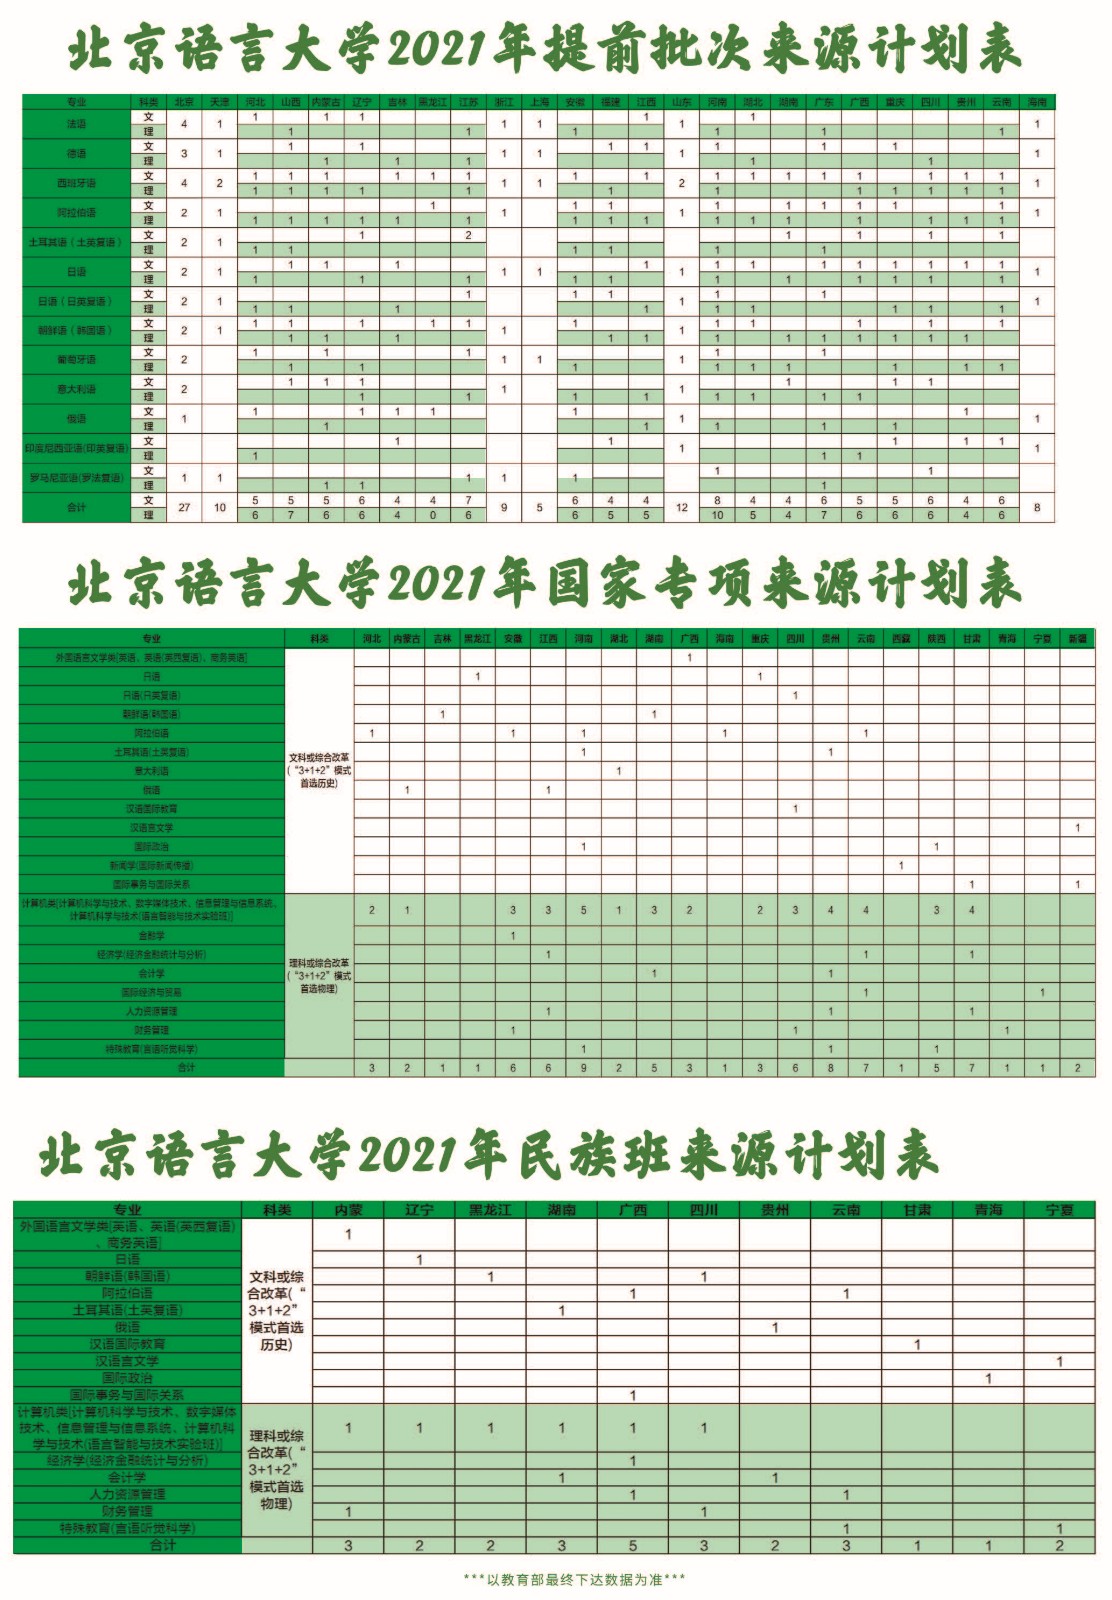 北京语言大学2021年本科招生计划